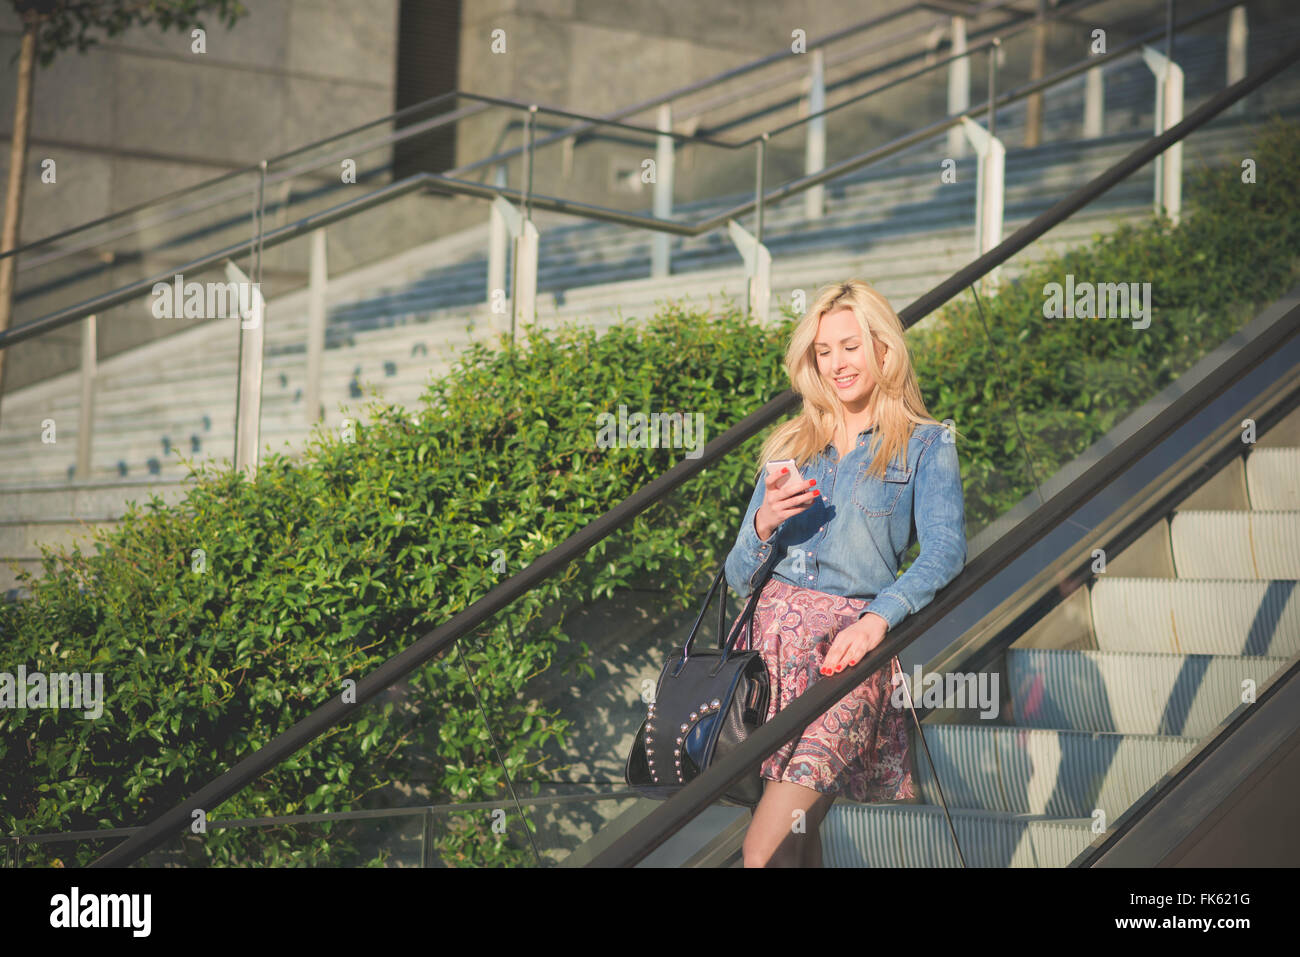 Knie-Figur des jungen schönen kaukasischen blonde Mädchen auf der Rolltreppe mit einem Smartphone suchen th Bildschirm Lächeln - Technologie, Kommunikation, soziale Netzwerk-Konzept Stockfoto